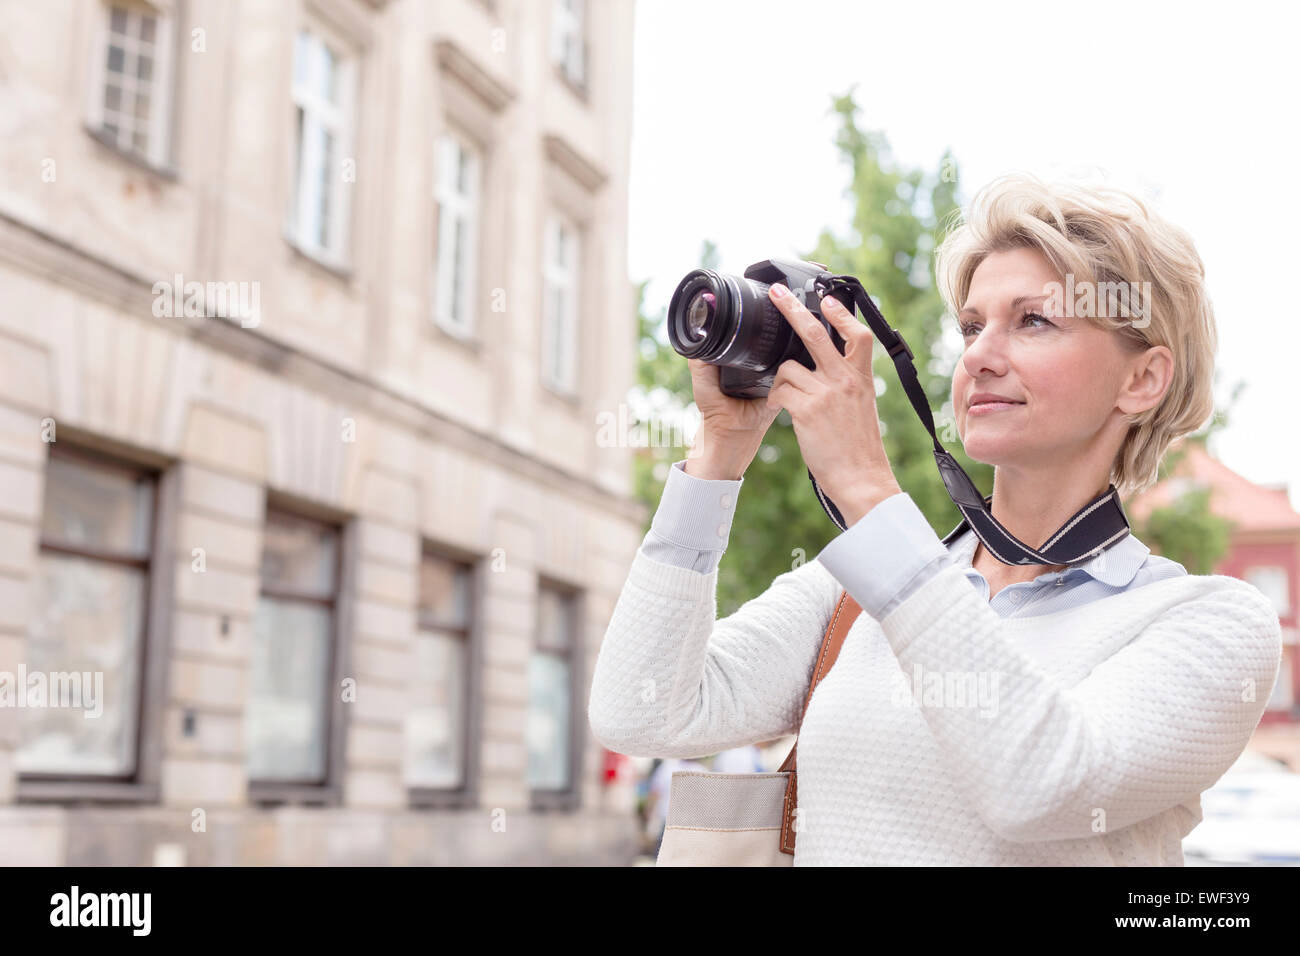 Donna di mezza età fotografando attraverso la fotocamera digitale in città Foto Stock